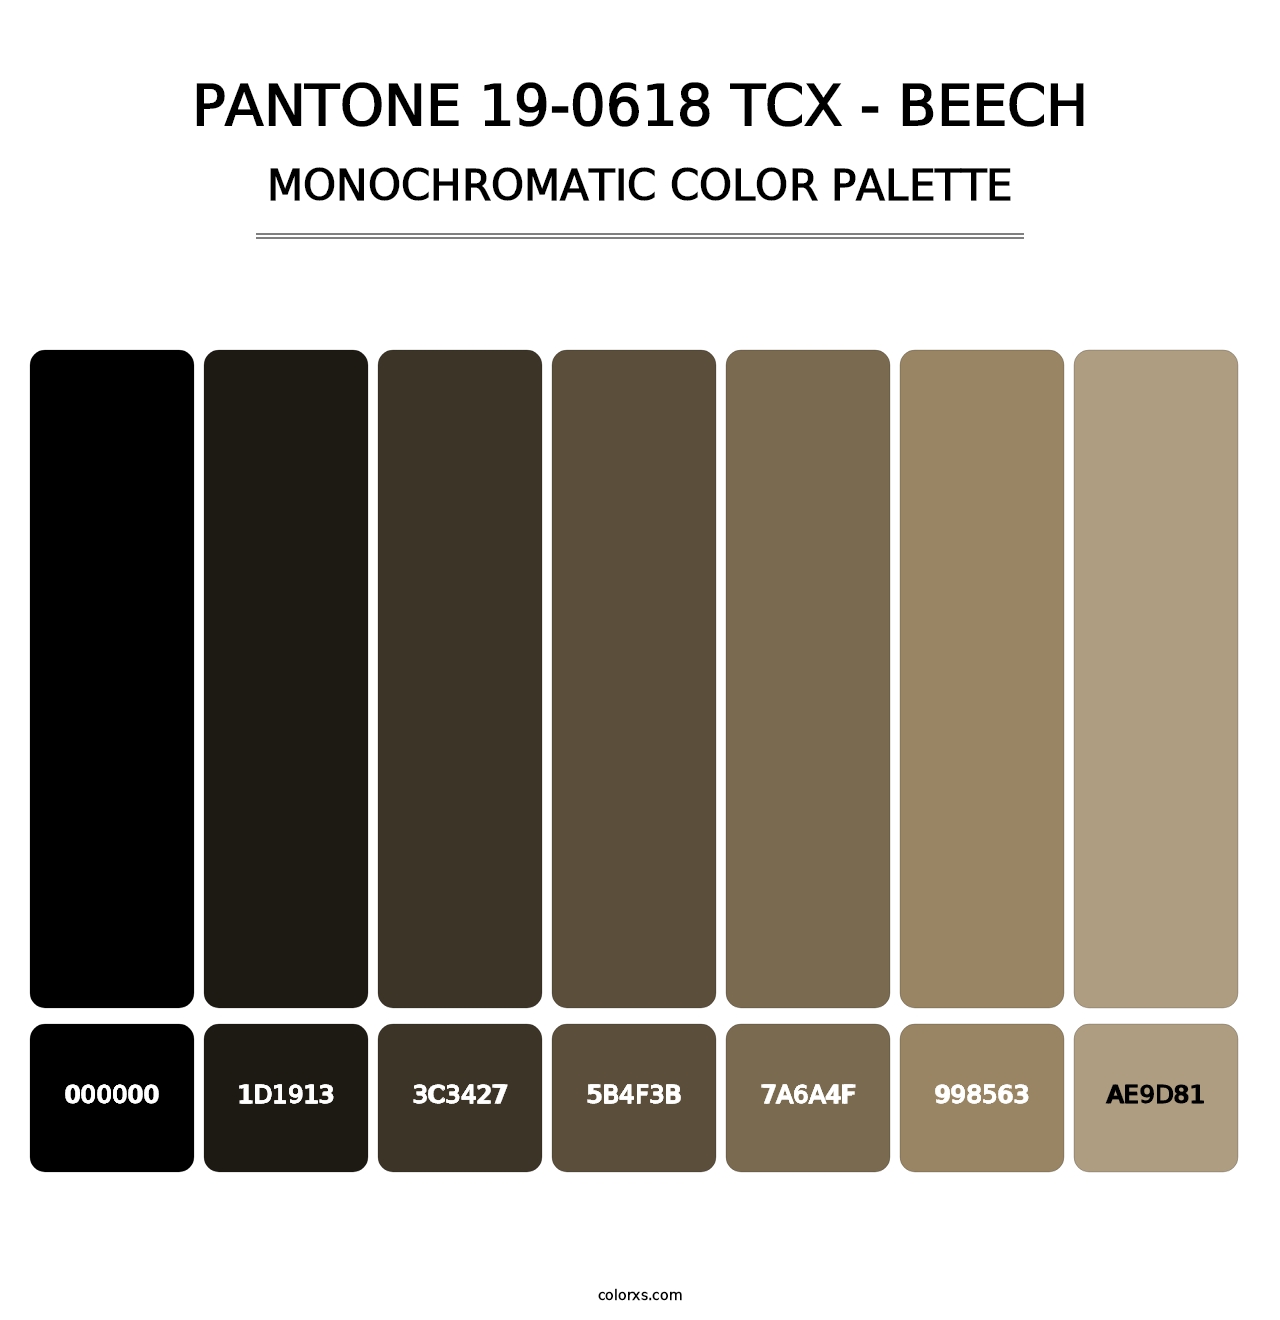 PANTONE 19-0618 TCX - Beech - Monochromatic Color Palette